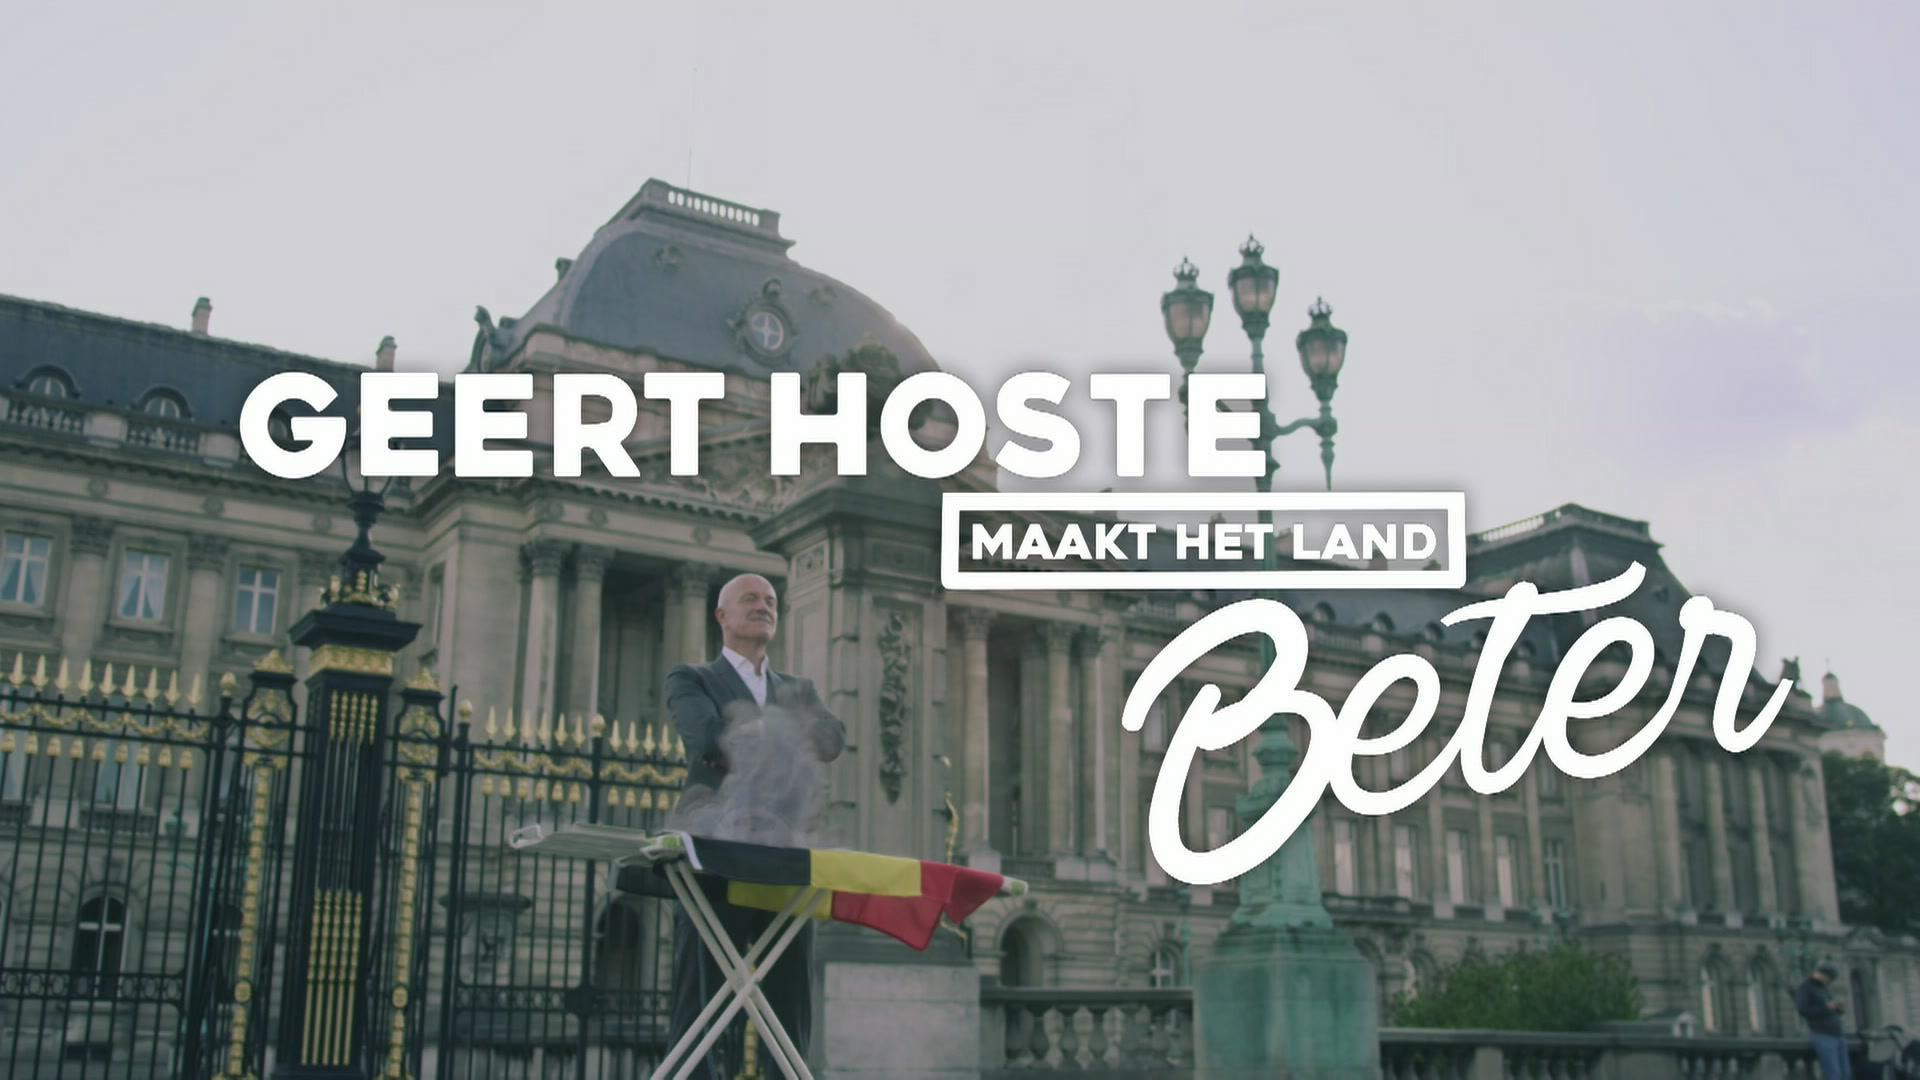 Show Geert Hoste maakt het land beter